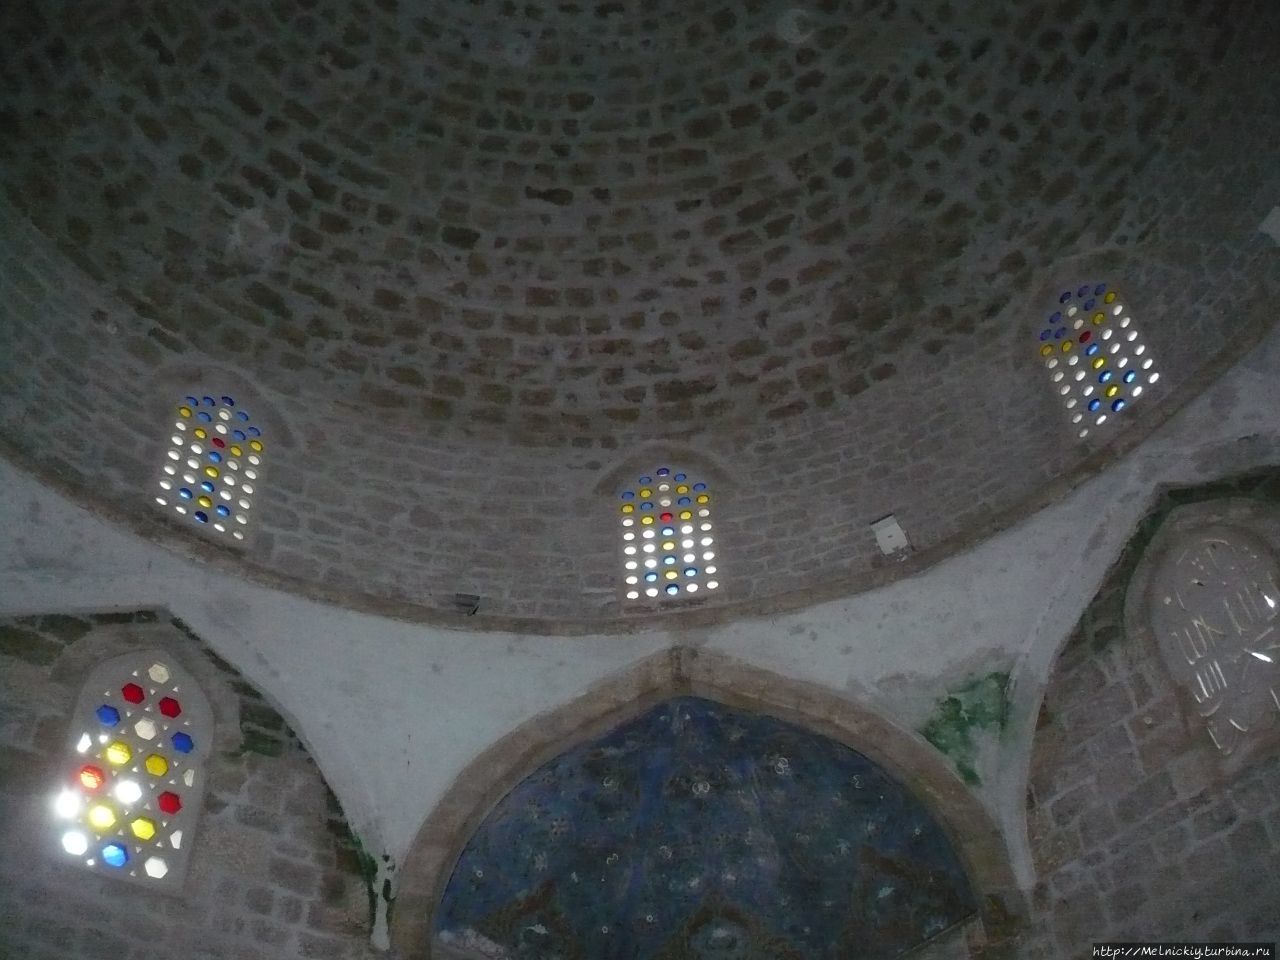 Мечеть Сисмана Ибрагим-паши Почитель, Босния и Герцеговина